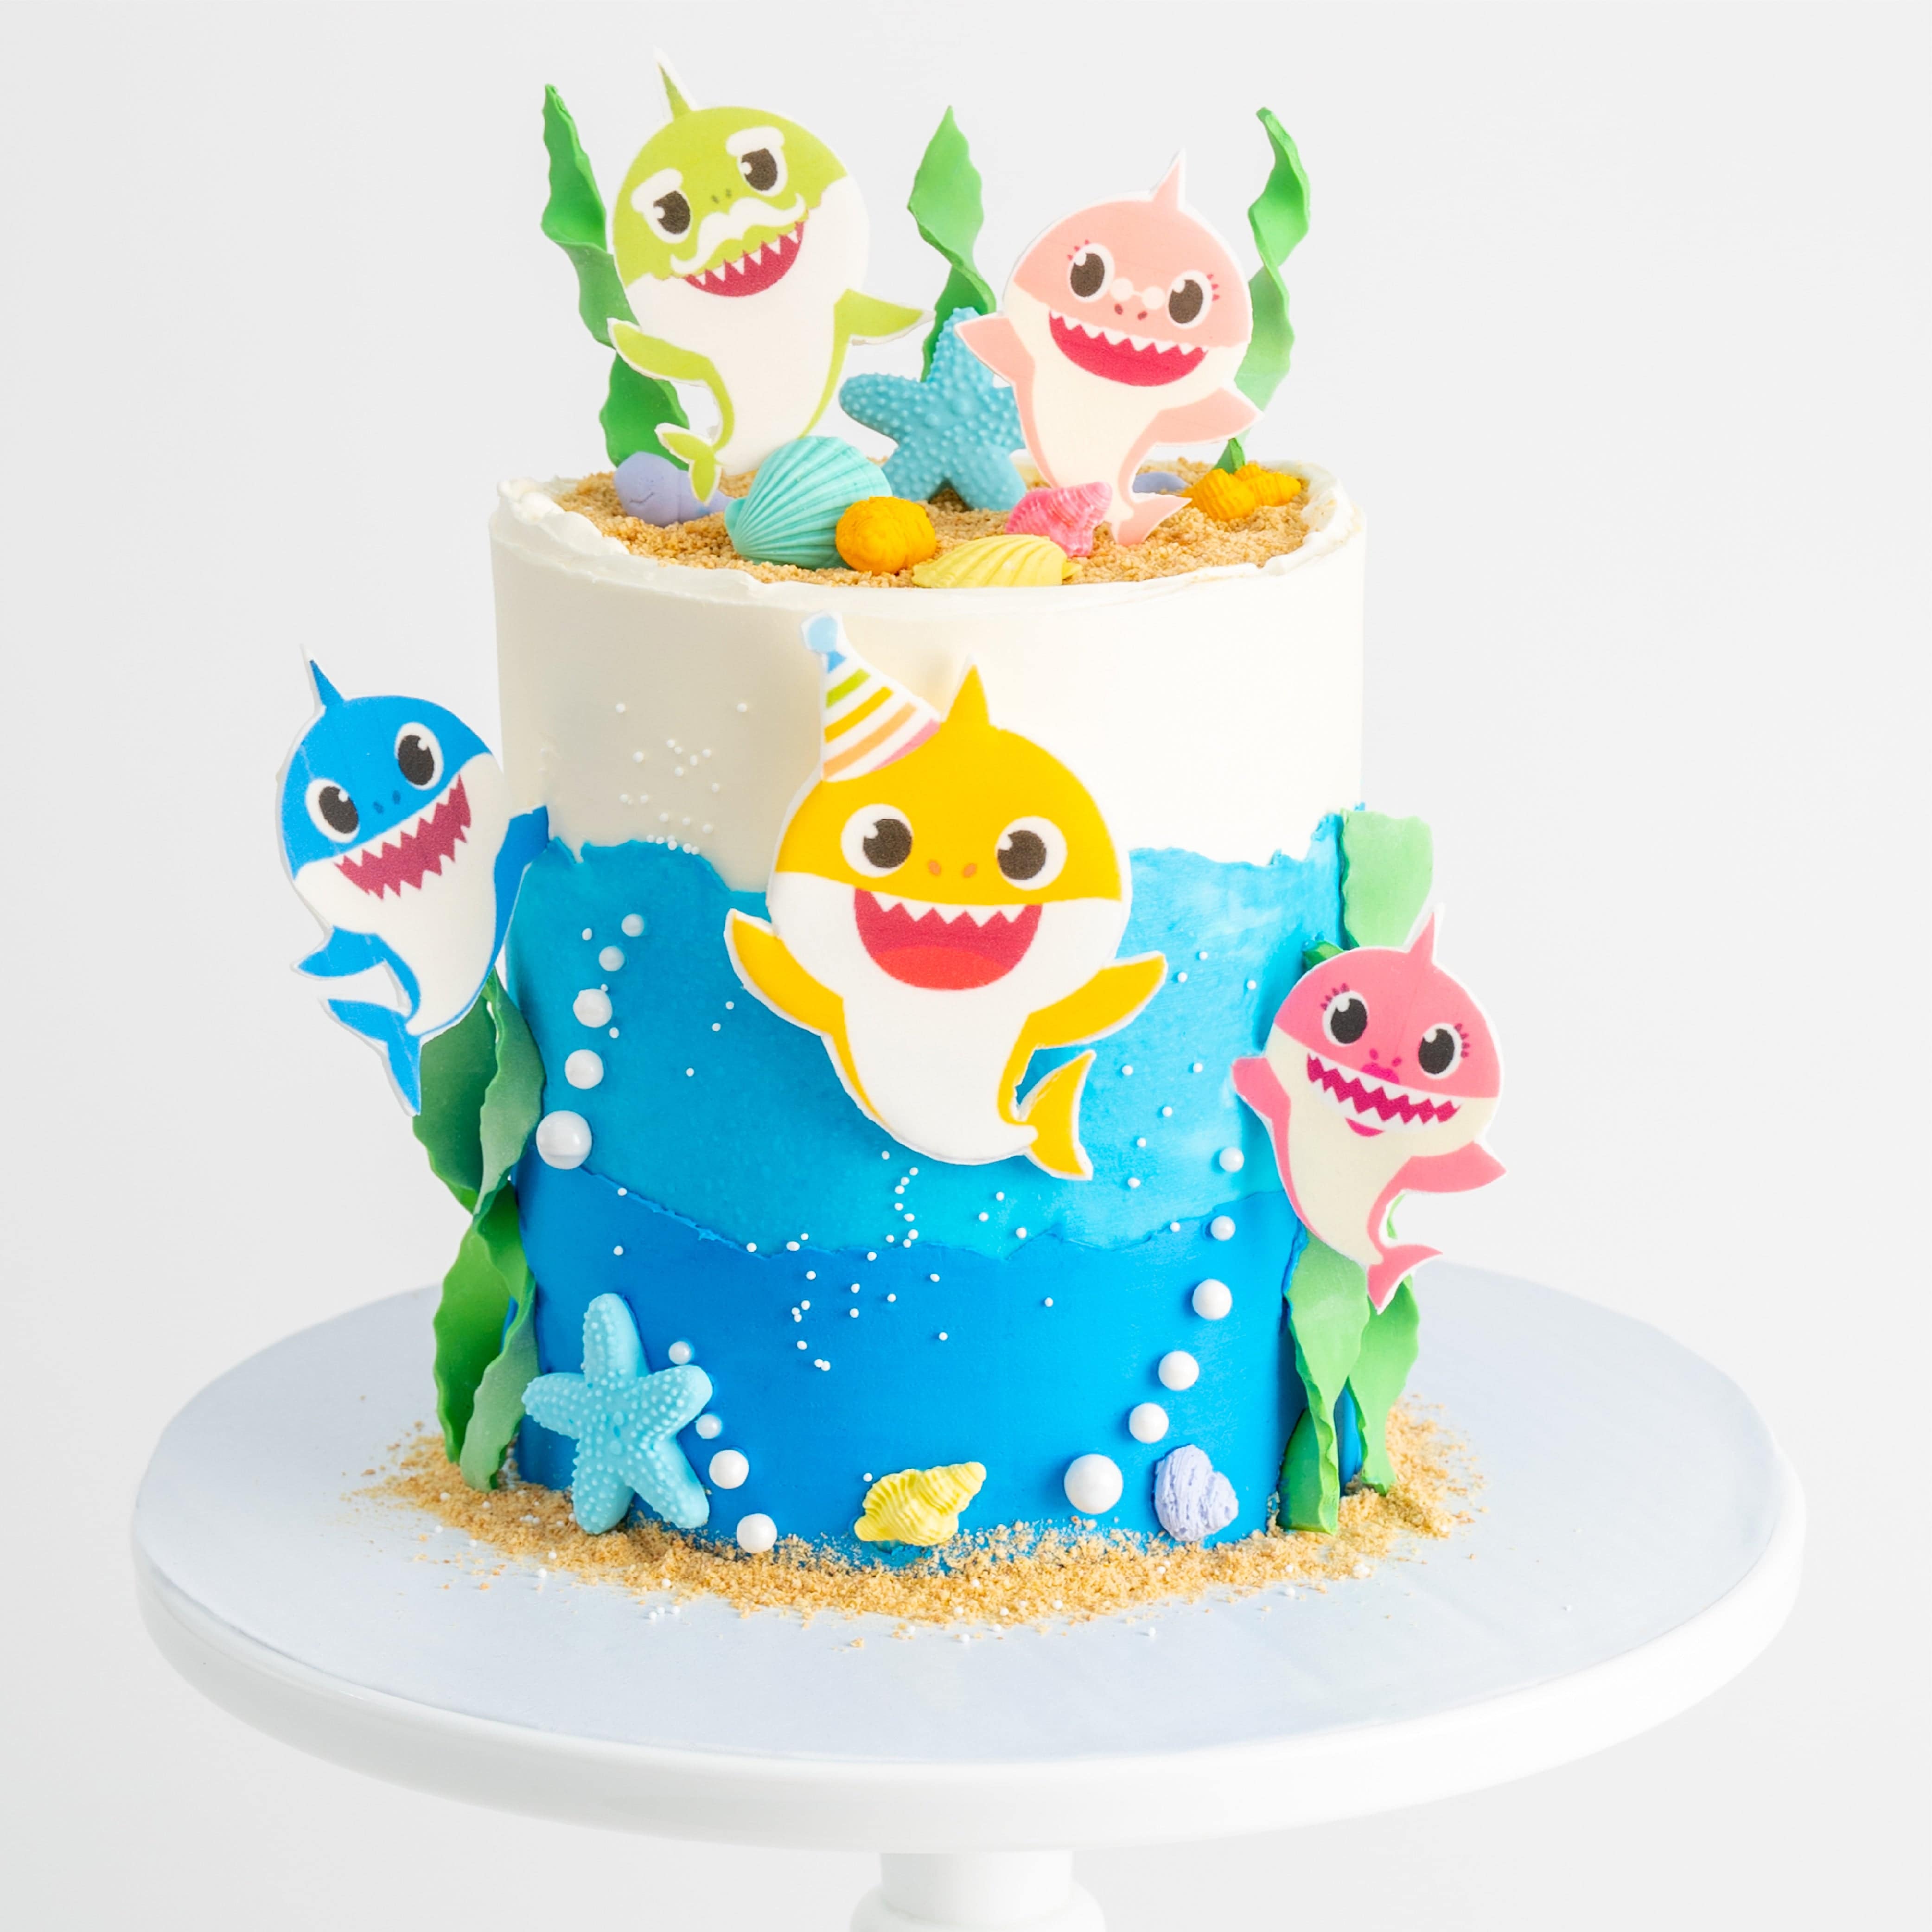 Baby Shark birthday party ideas